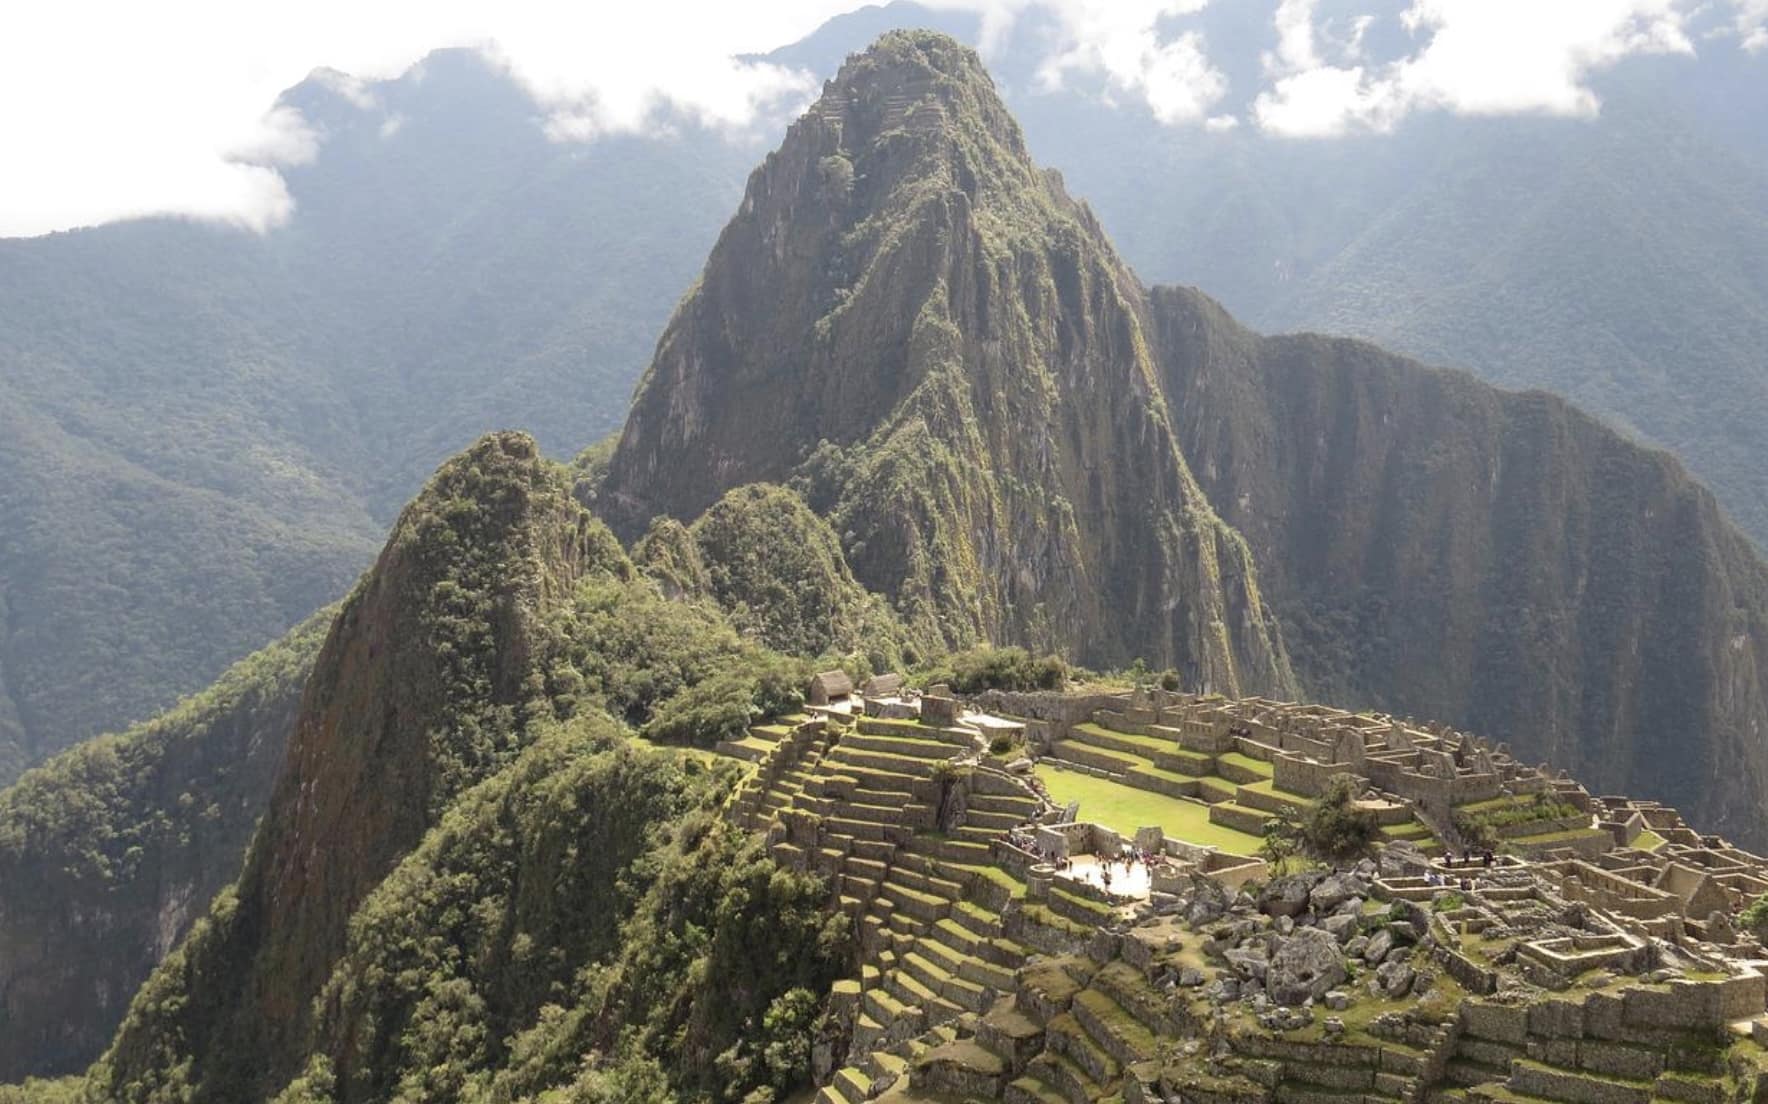 Beste reisezeit für Reise nach Peru 2022?